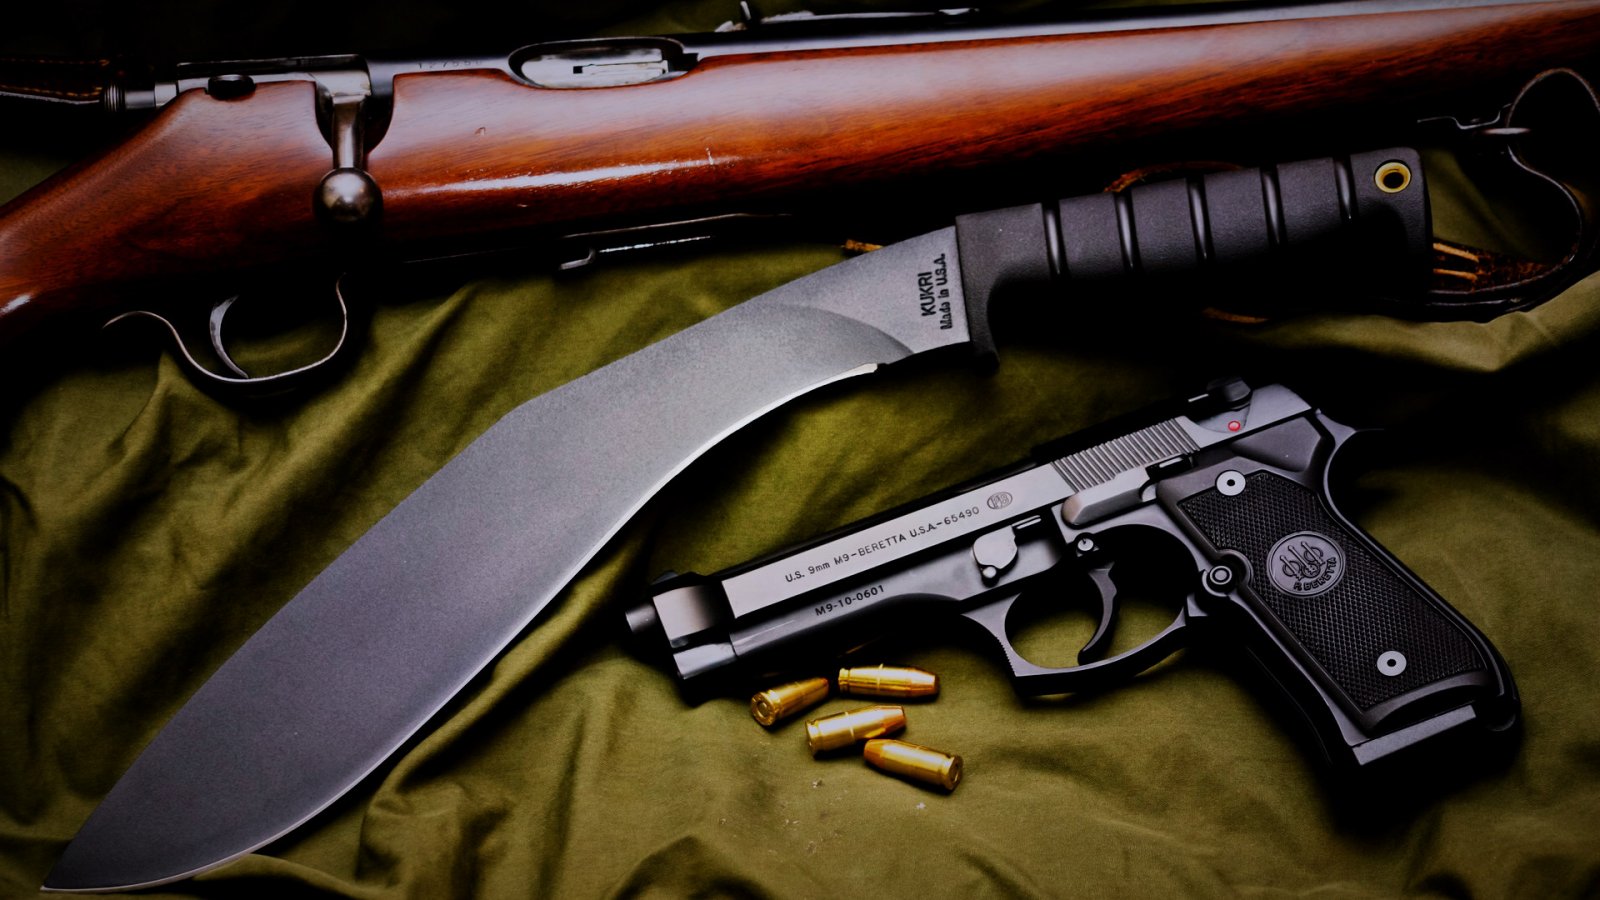 Beretta M9 pistol Widescreen HD Wallpapers | 1600x900 hd Other ...